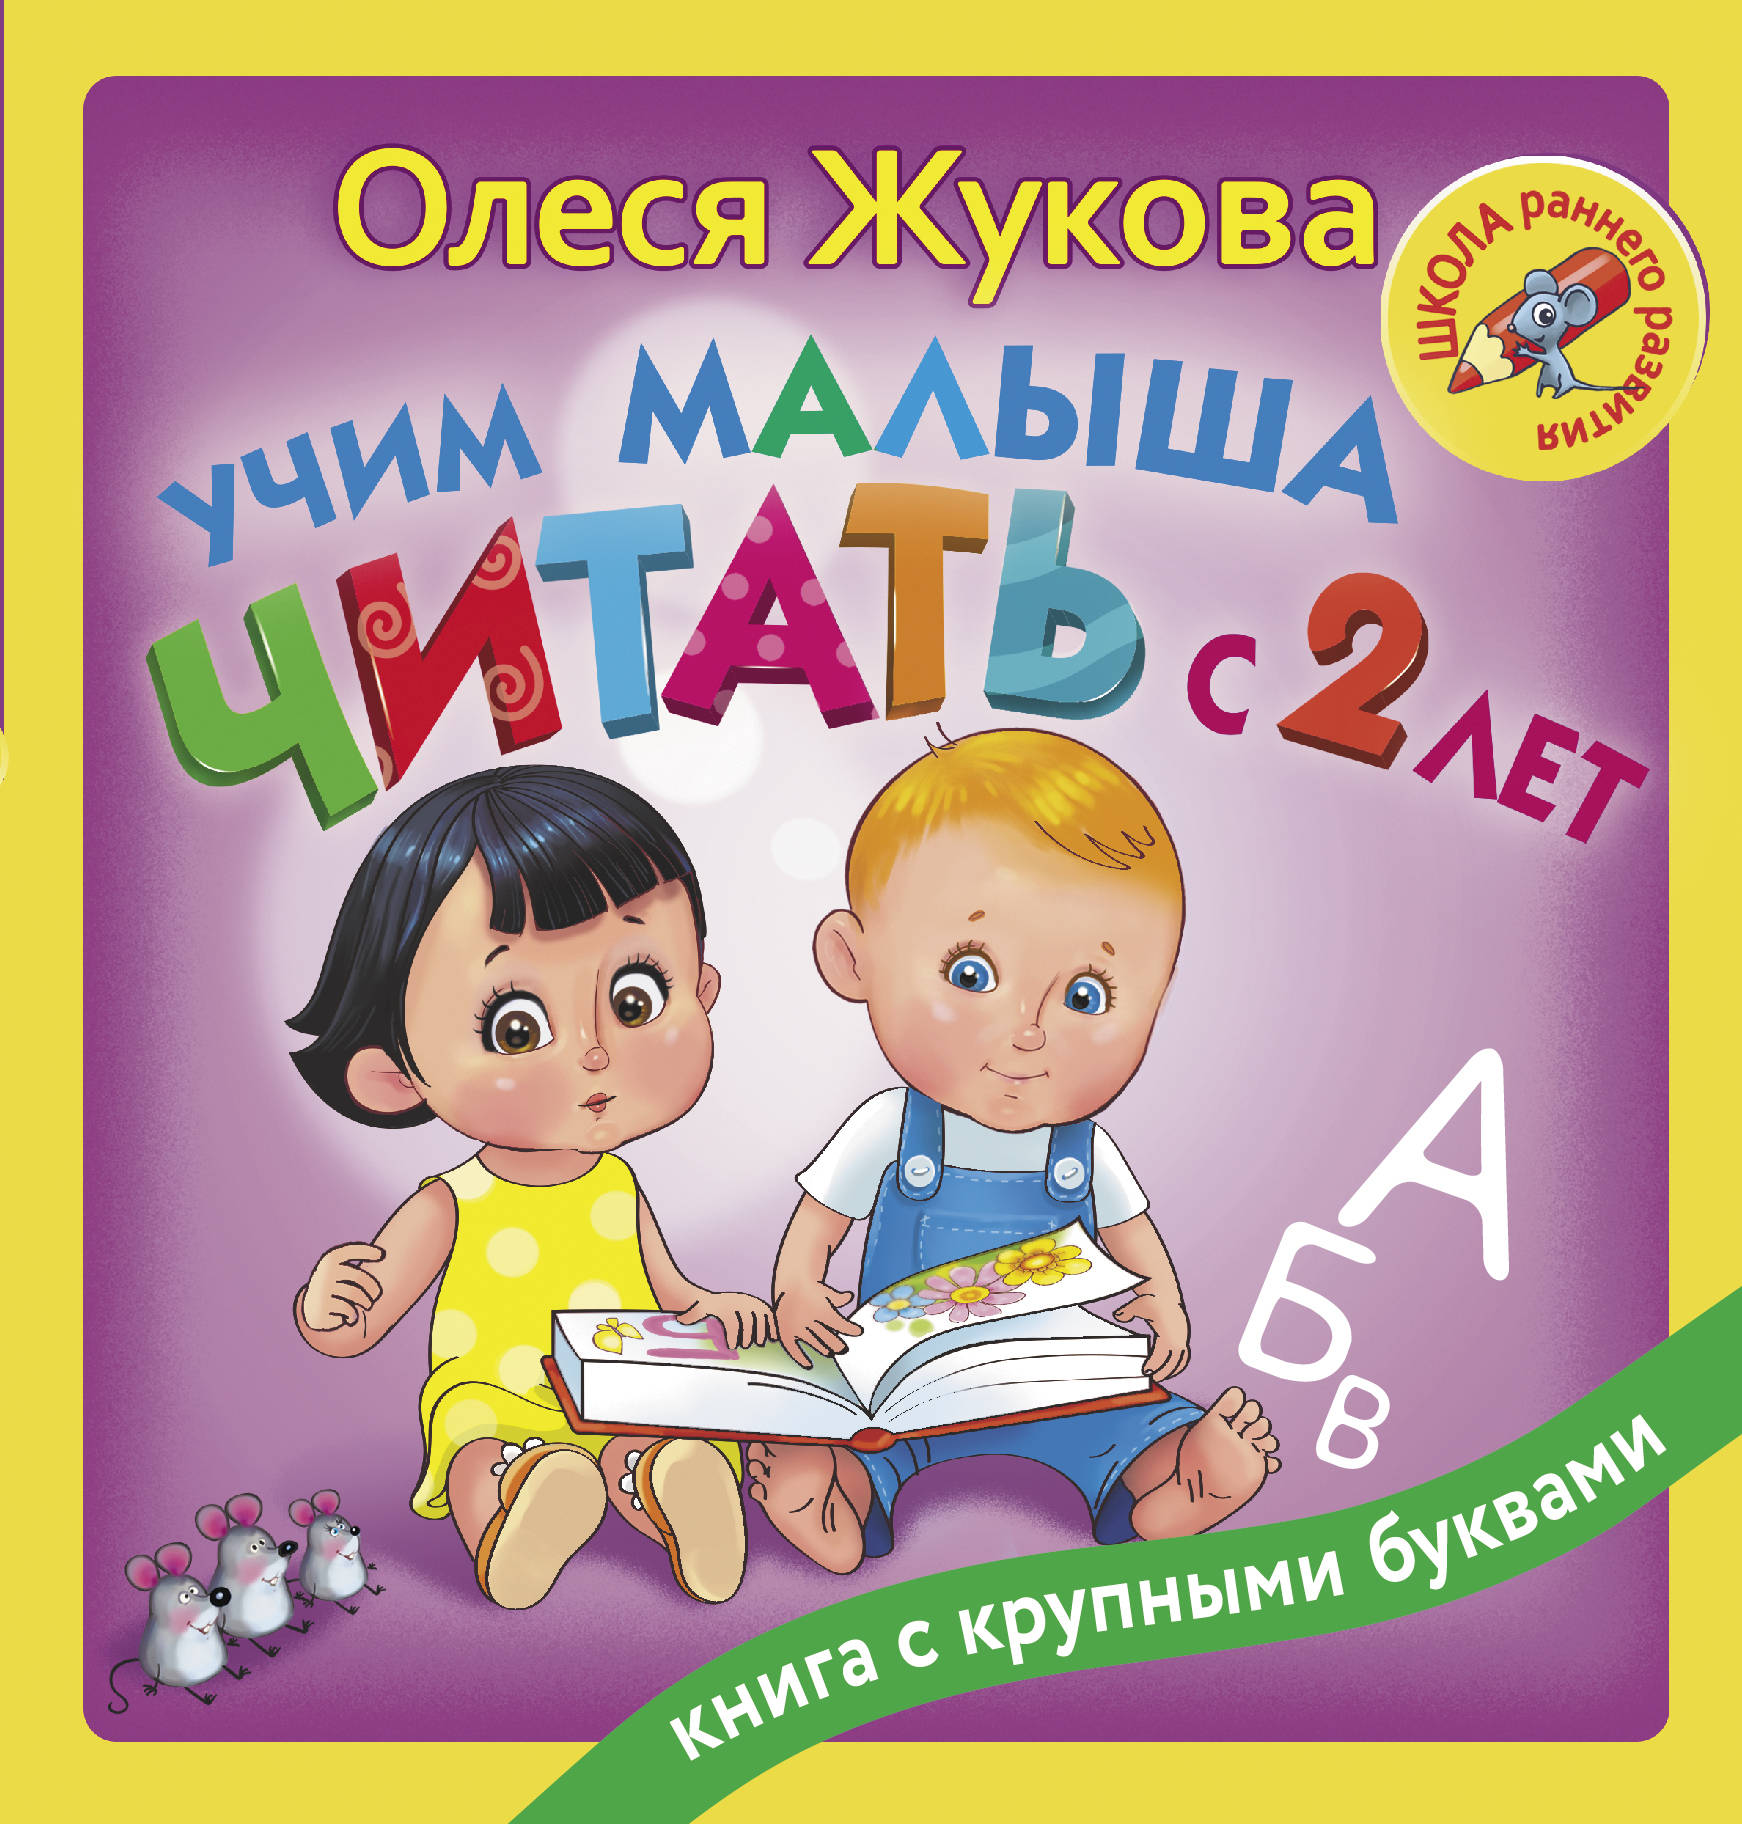 Учим малыша читать с 2-х лет. Жукова Олеся Станиславовна